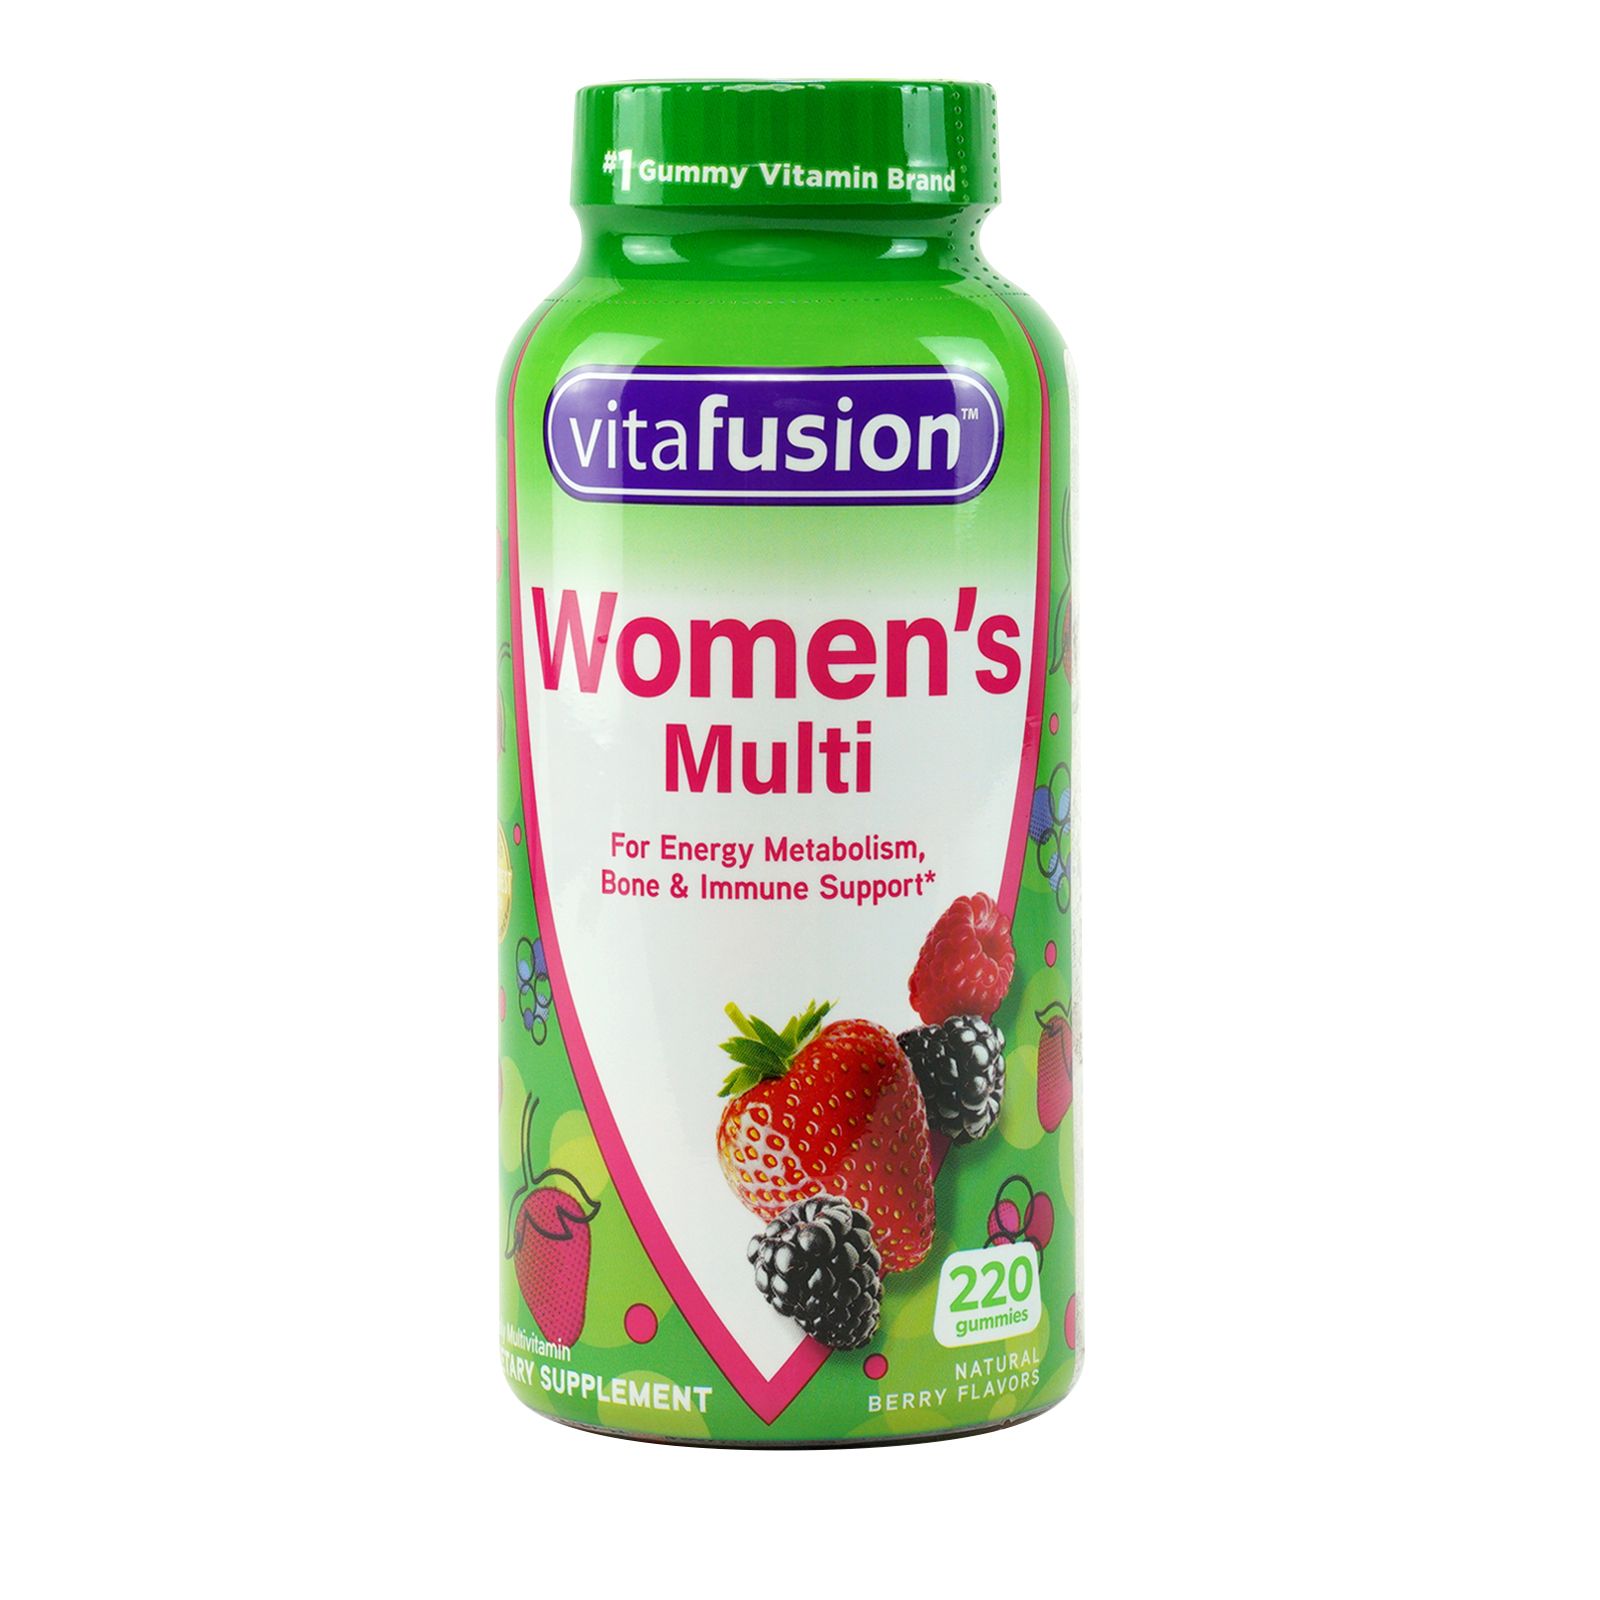 Women's Vitamins